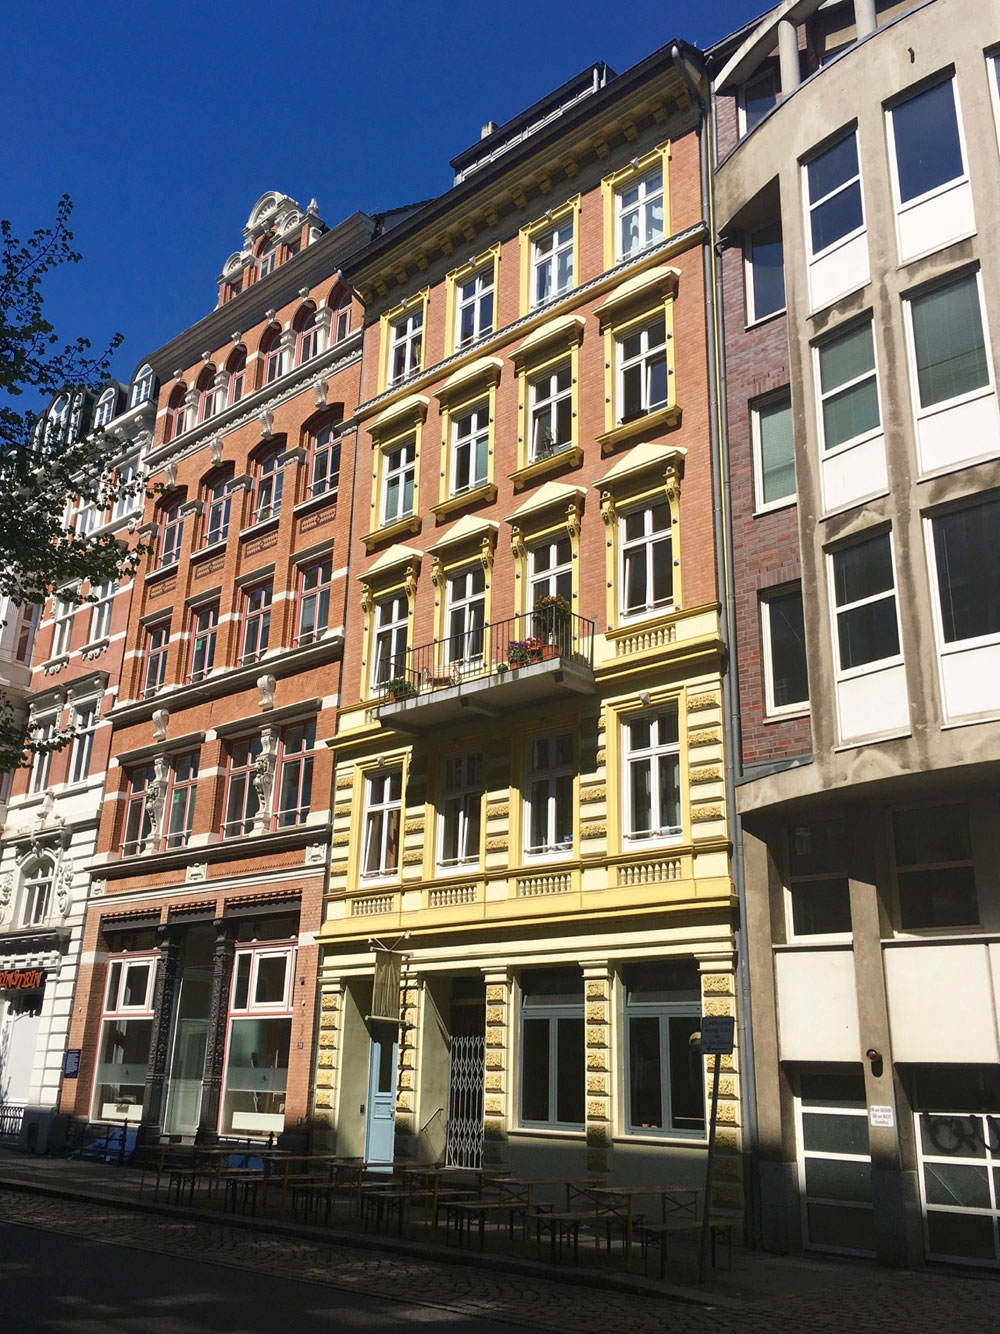 Building in the Altstadt